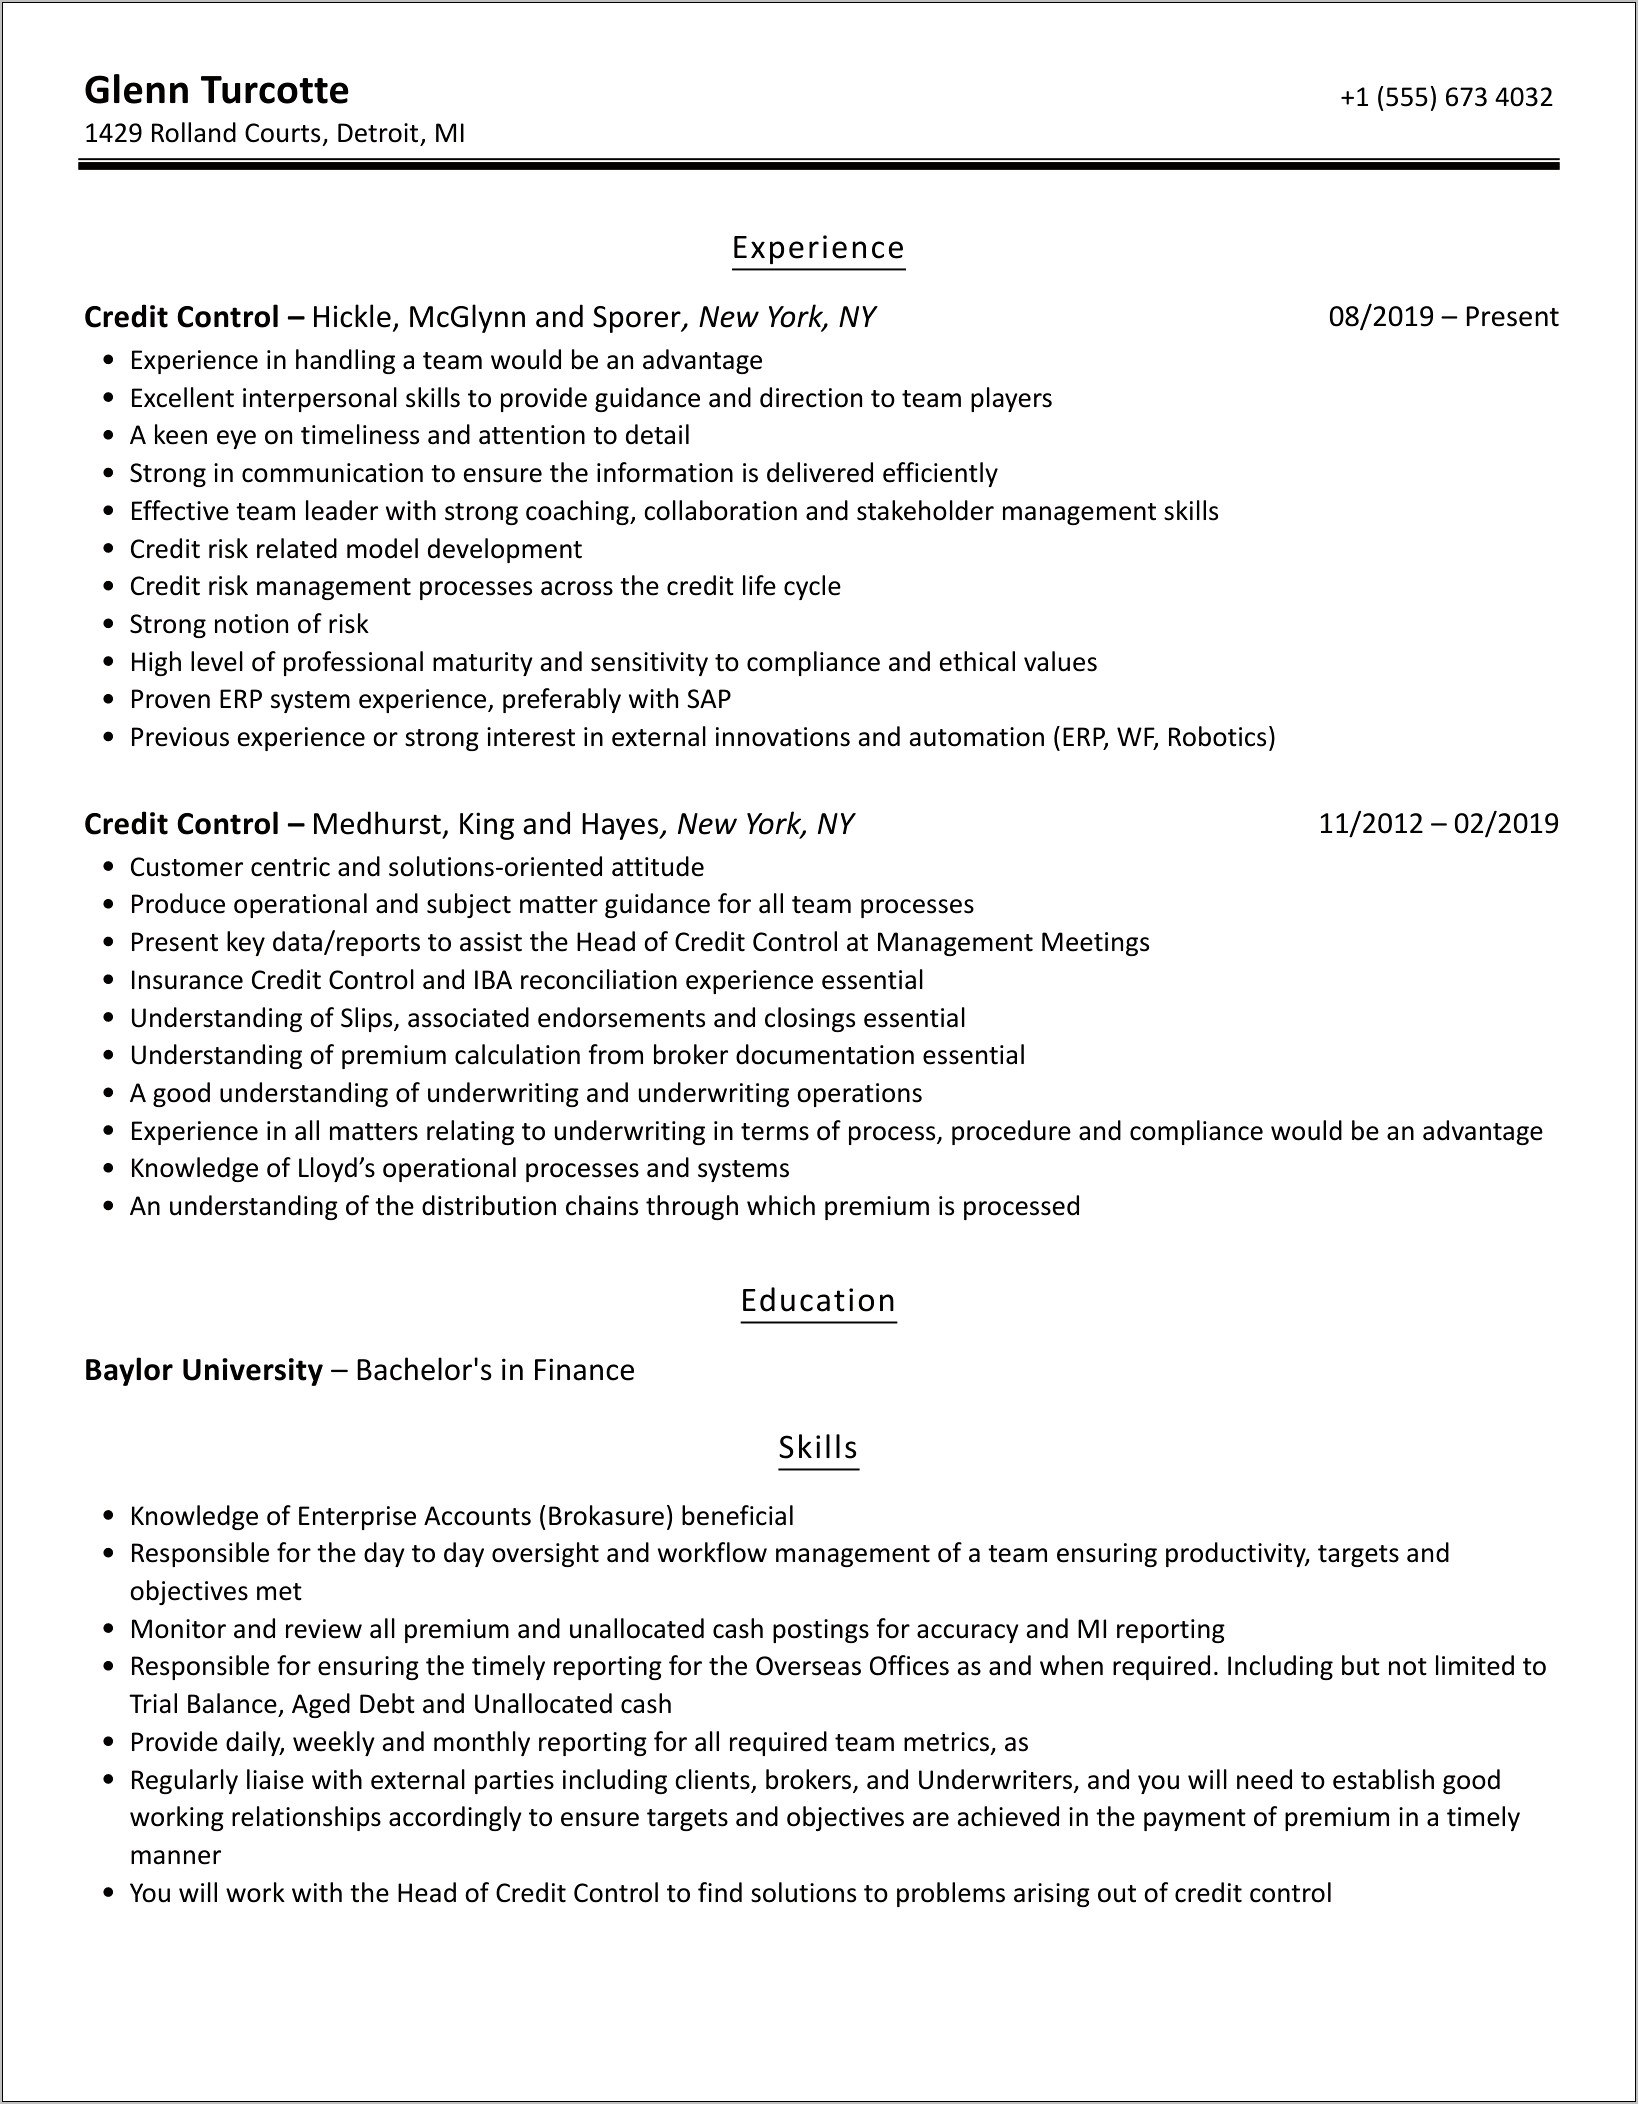 Credit Control Job Description Resume